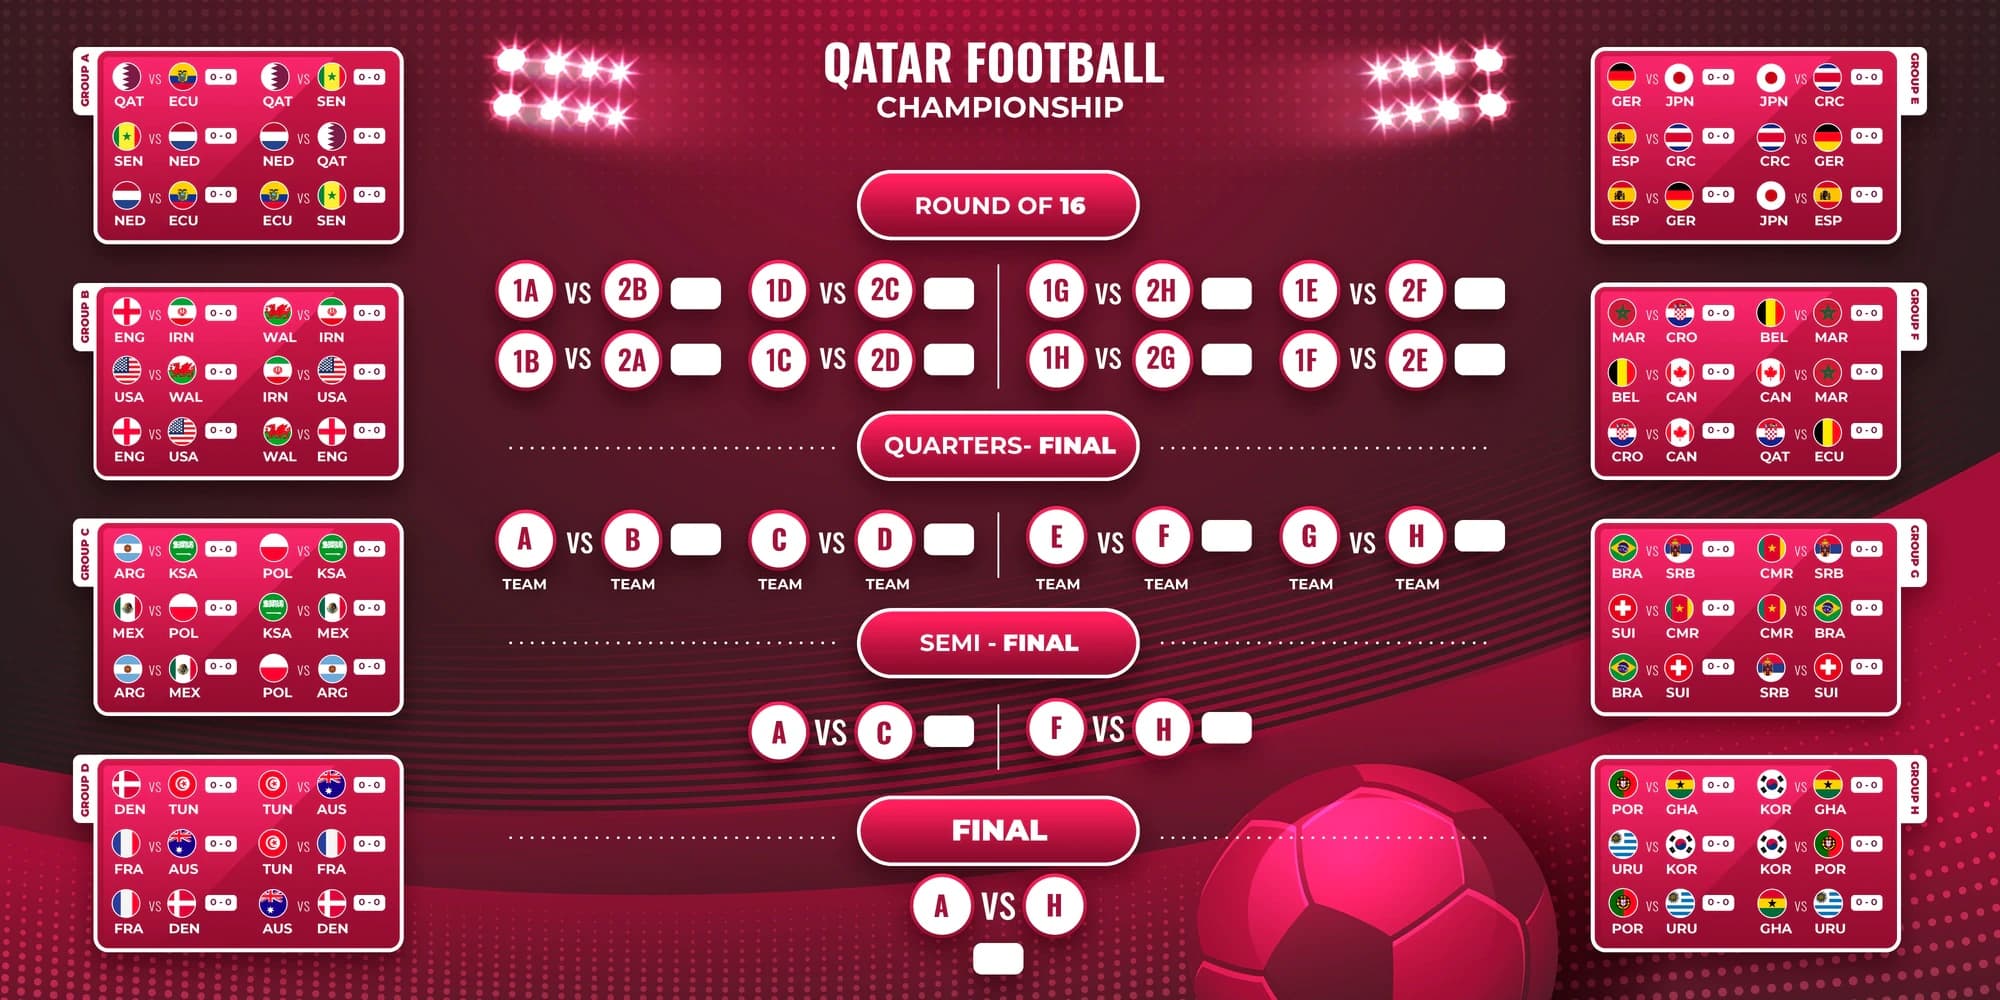 Copa do mundo de futebol, qatar 2022. calendário de jogos de